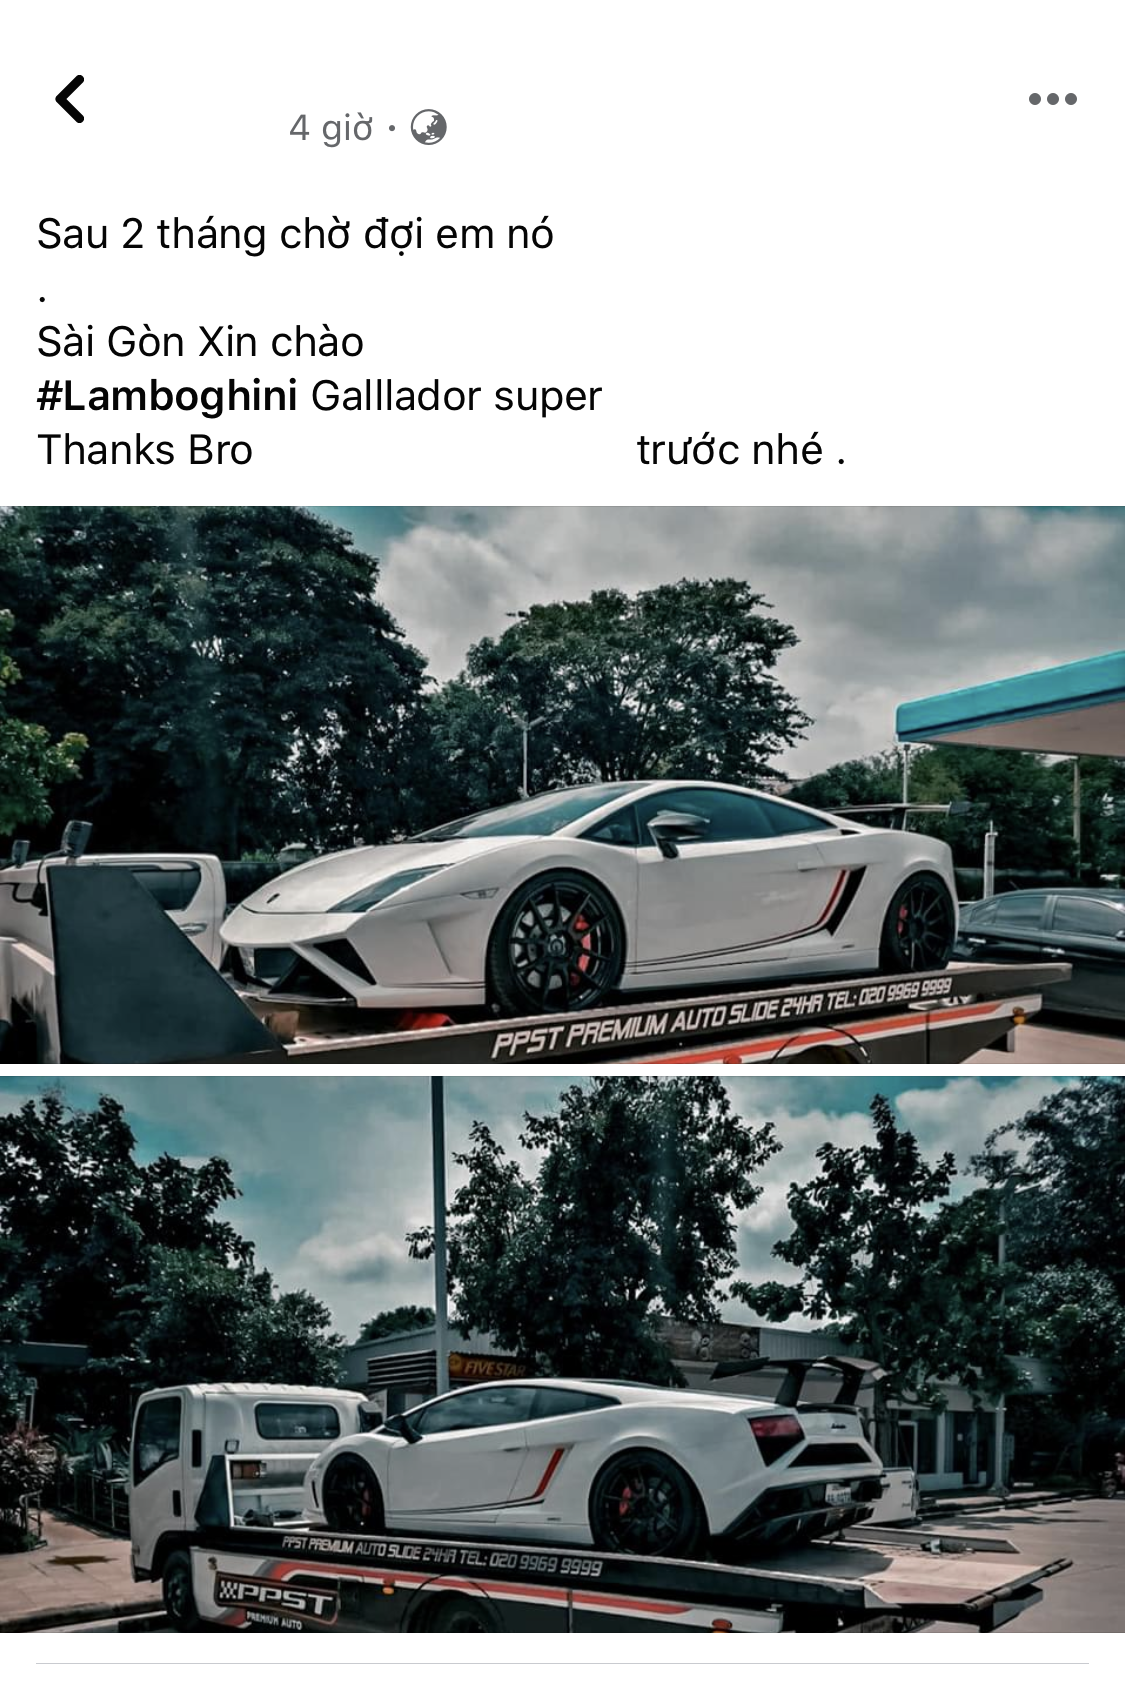 Thêm Lamborghini Gallardo về Việt Nam, nhiều khả năng thuộc phiên bản đặc biệt chỉ có 50 chiếc trên toàn thế giới - Ảnh 1.